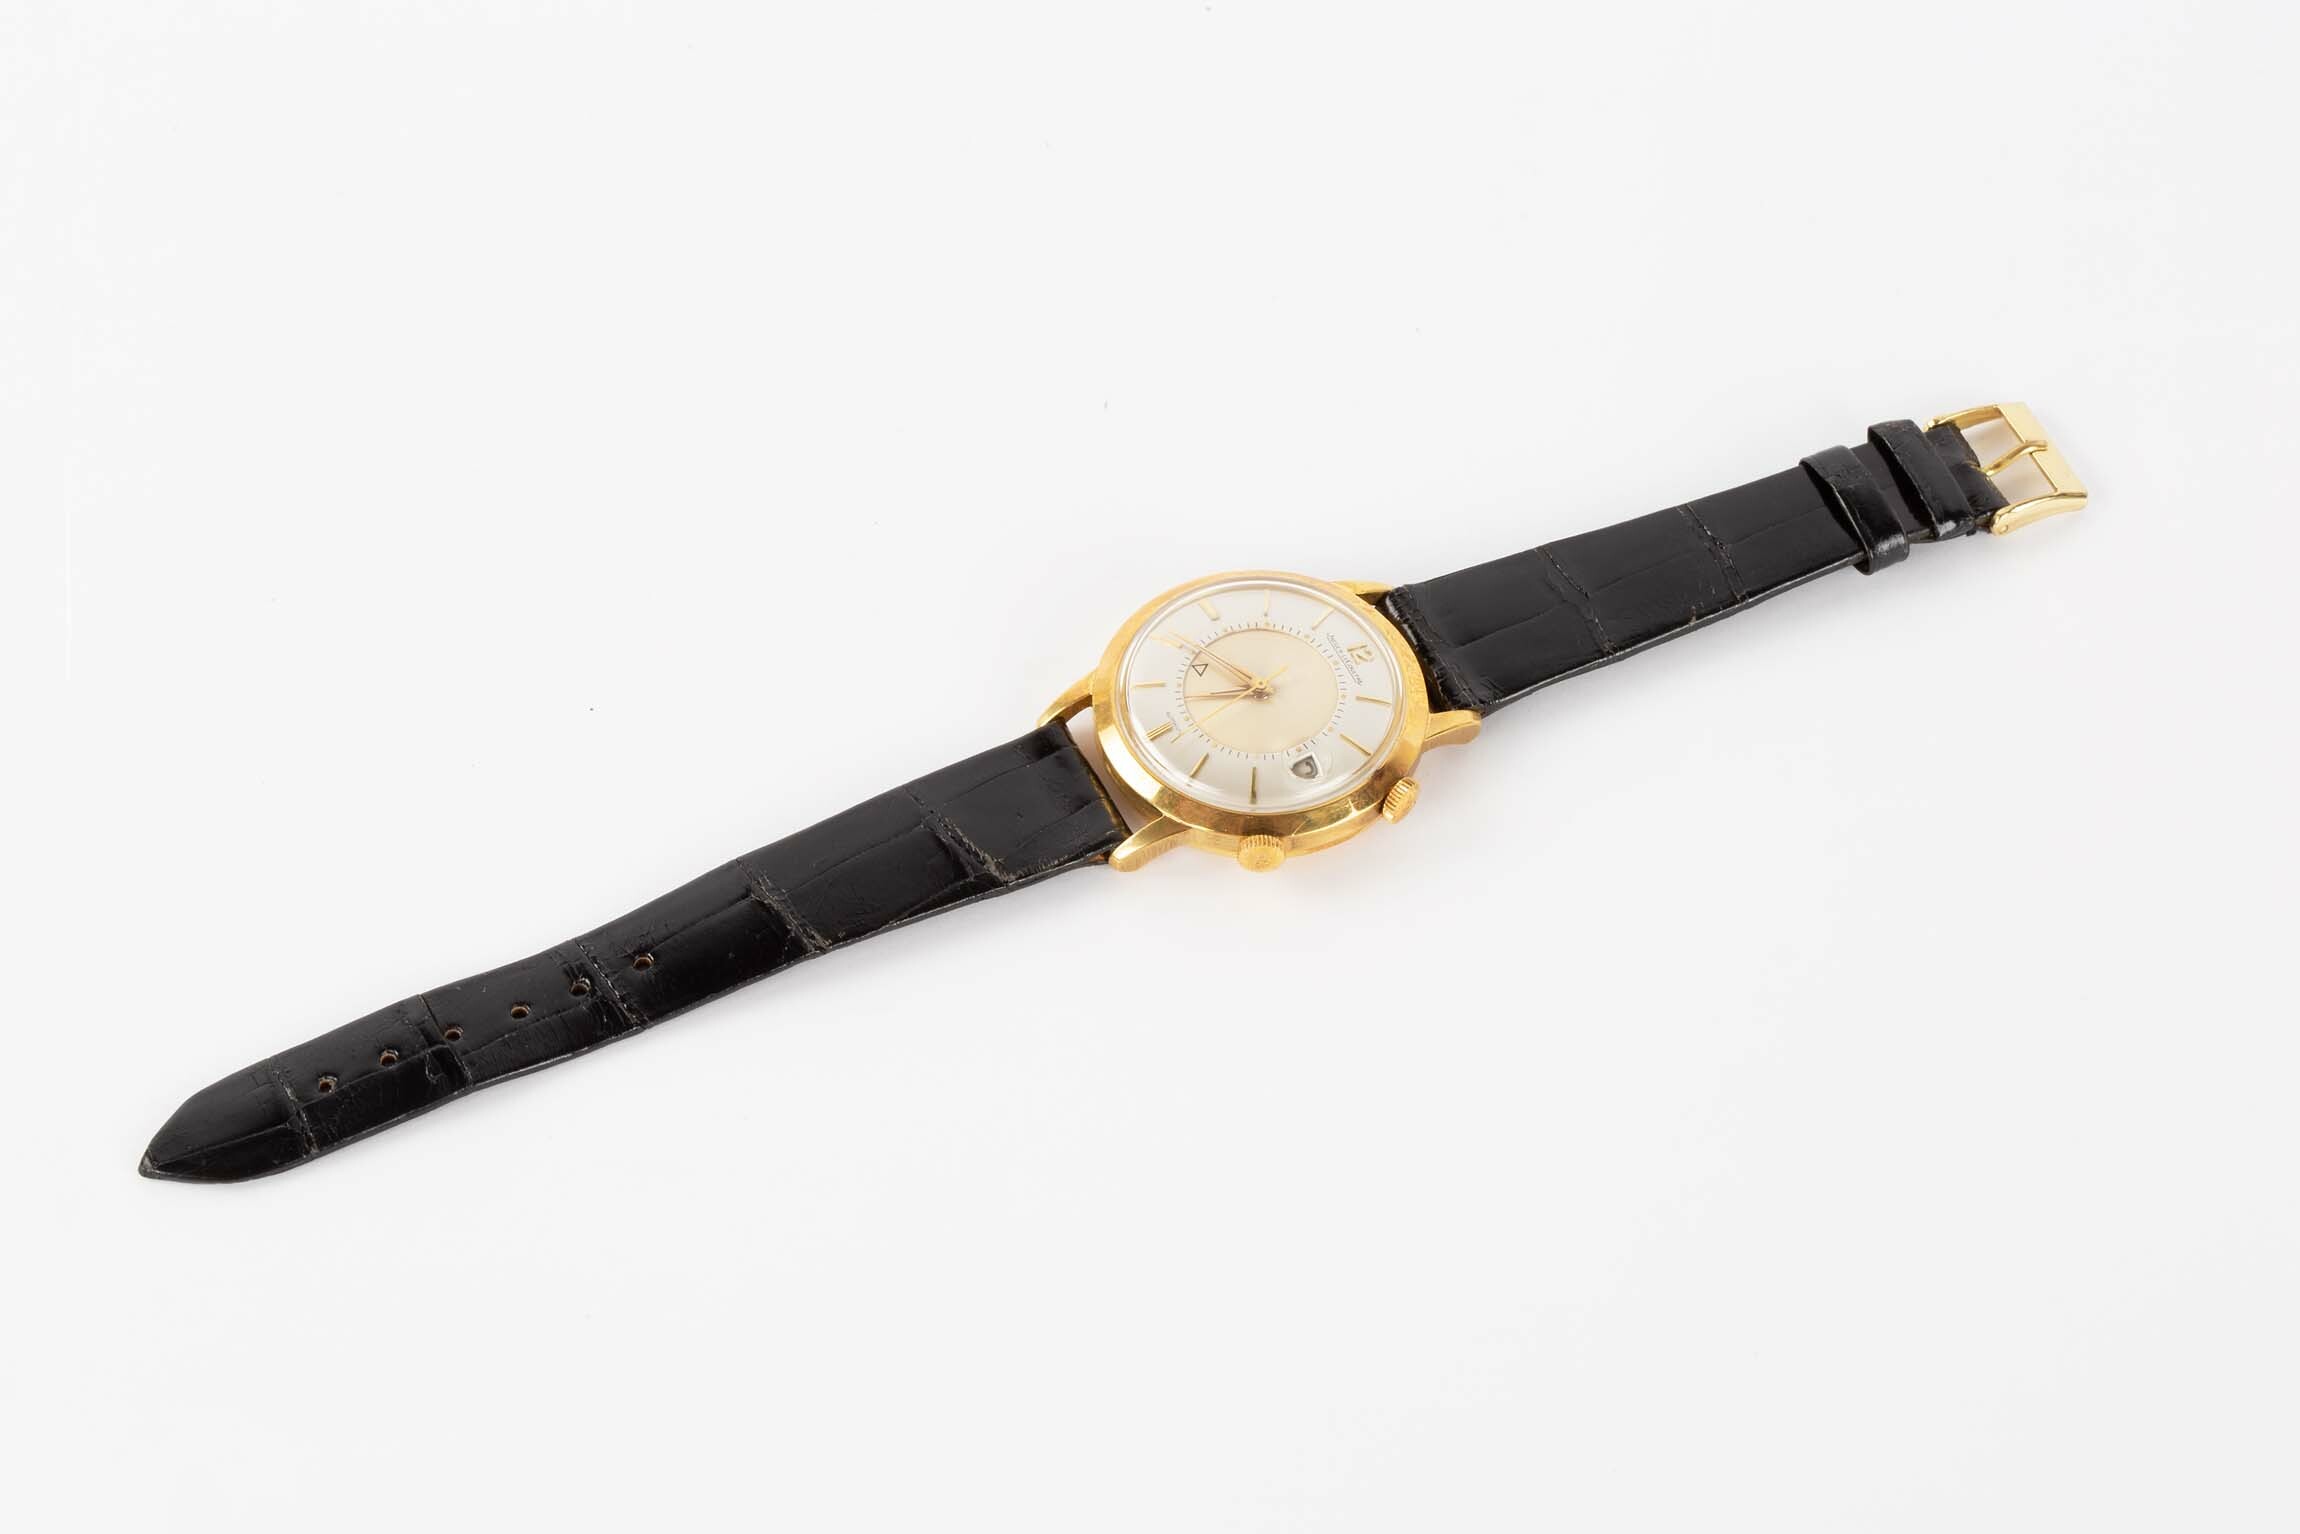 Armbanduhr "Memovox", Jaeger-LeCoultre, Le Sentier, um 1960 (Deutsches Uhrenmuseum CC BY-SA)